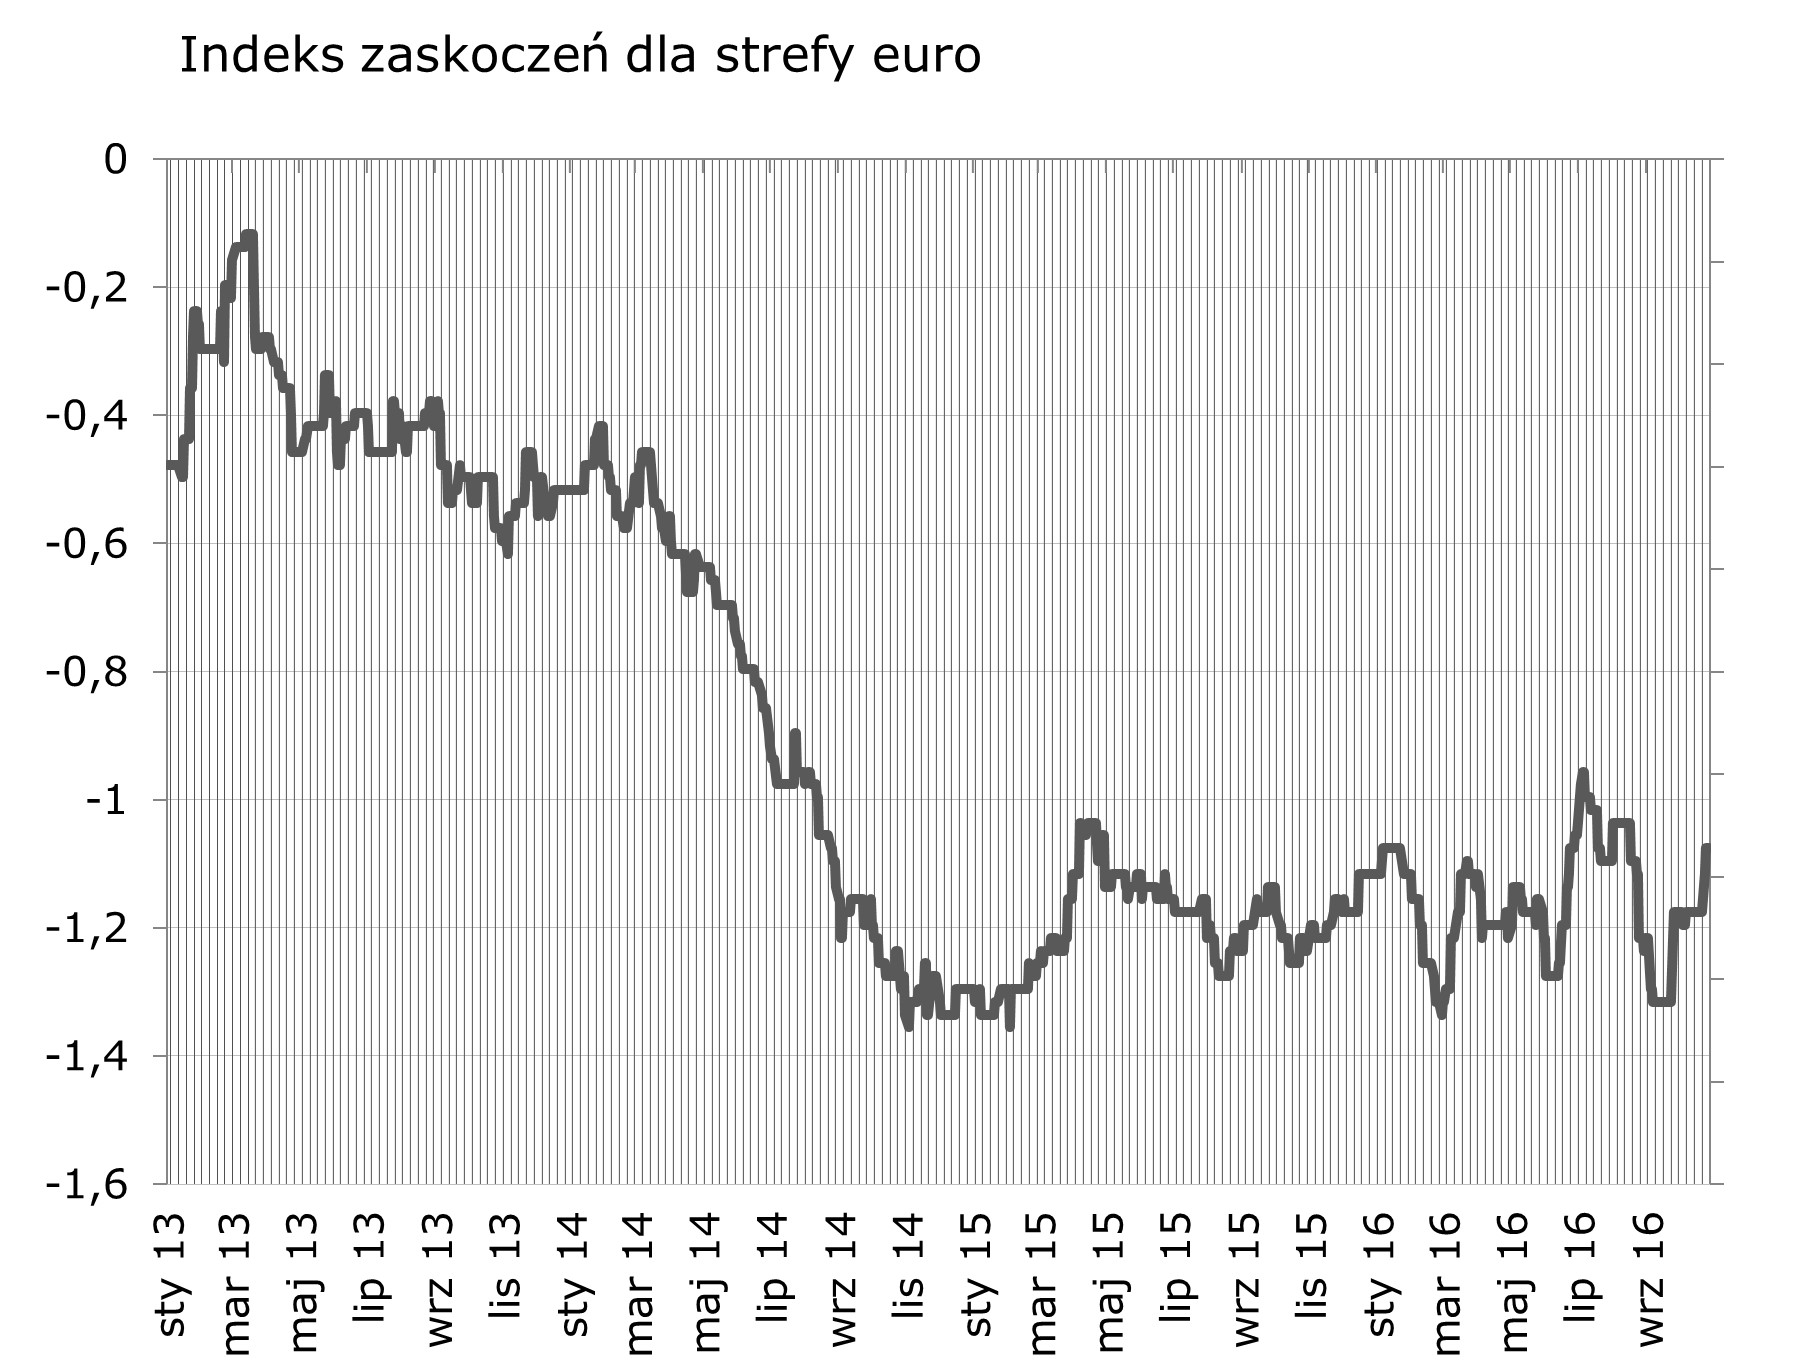 Syntetyczne podsumowanie minionego tygodnia W góre po danych o bezrobociu. W tym tygodniu dane o inflacji i PMI najprawdopodobniej porusza indeksem zaskoczen dla Polski.